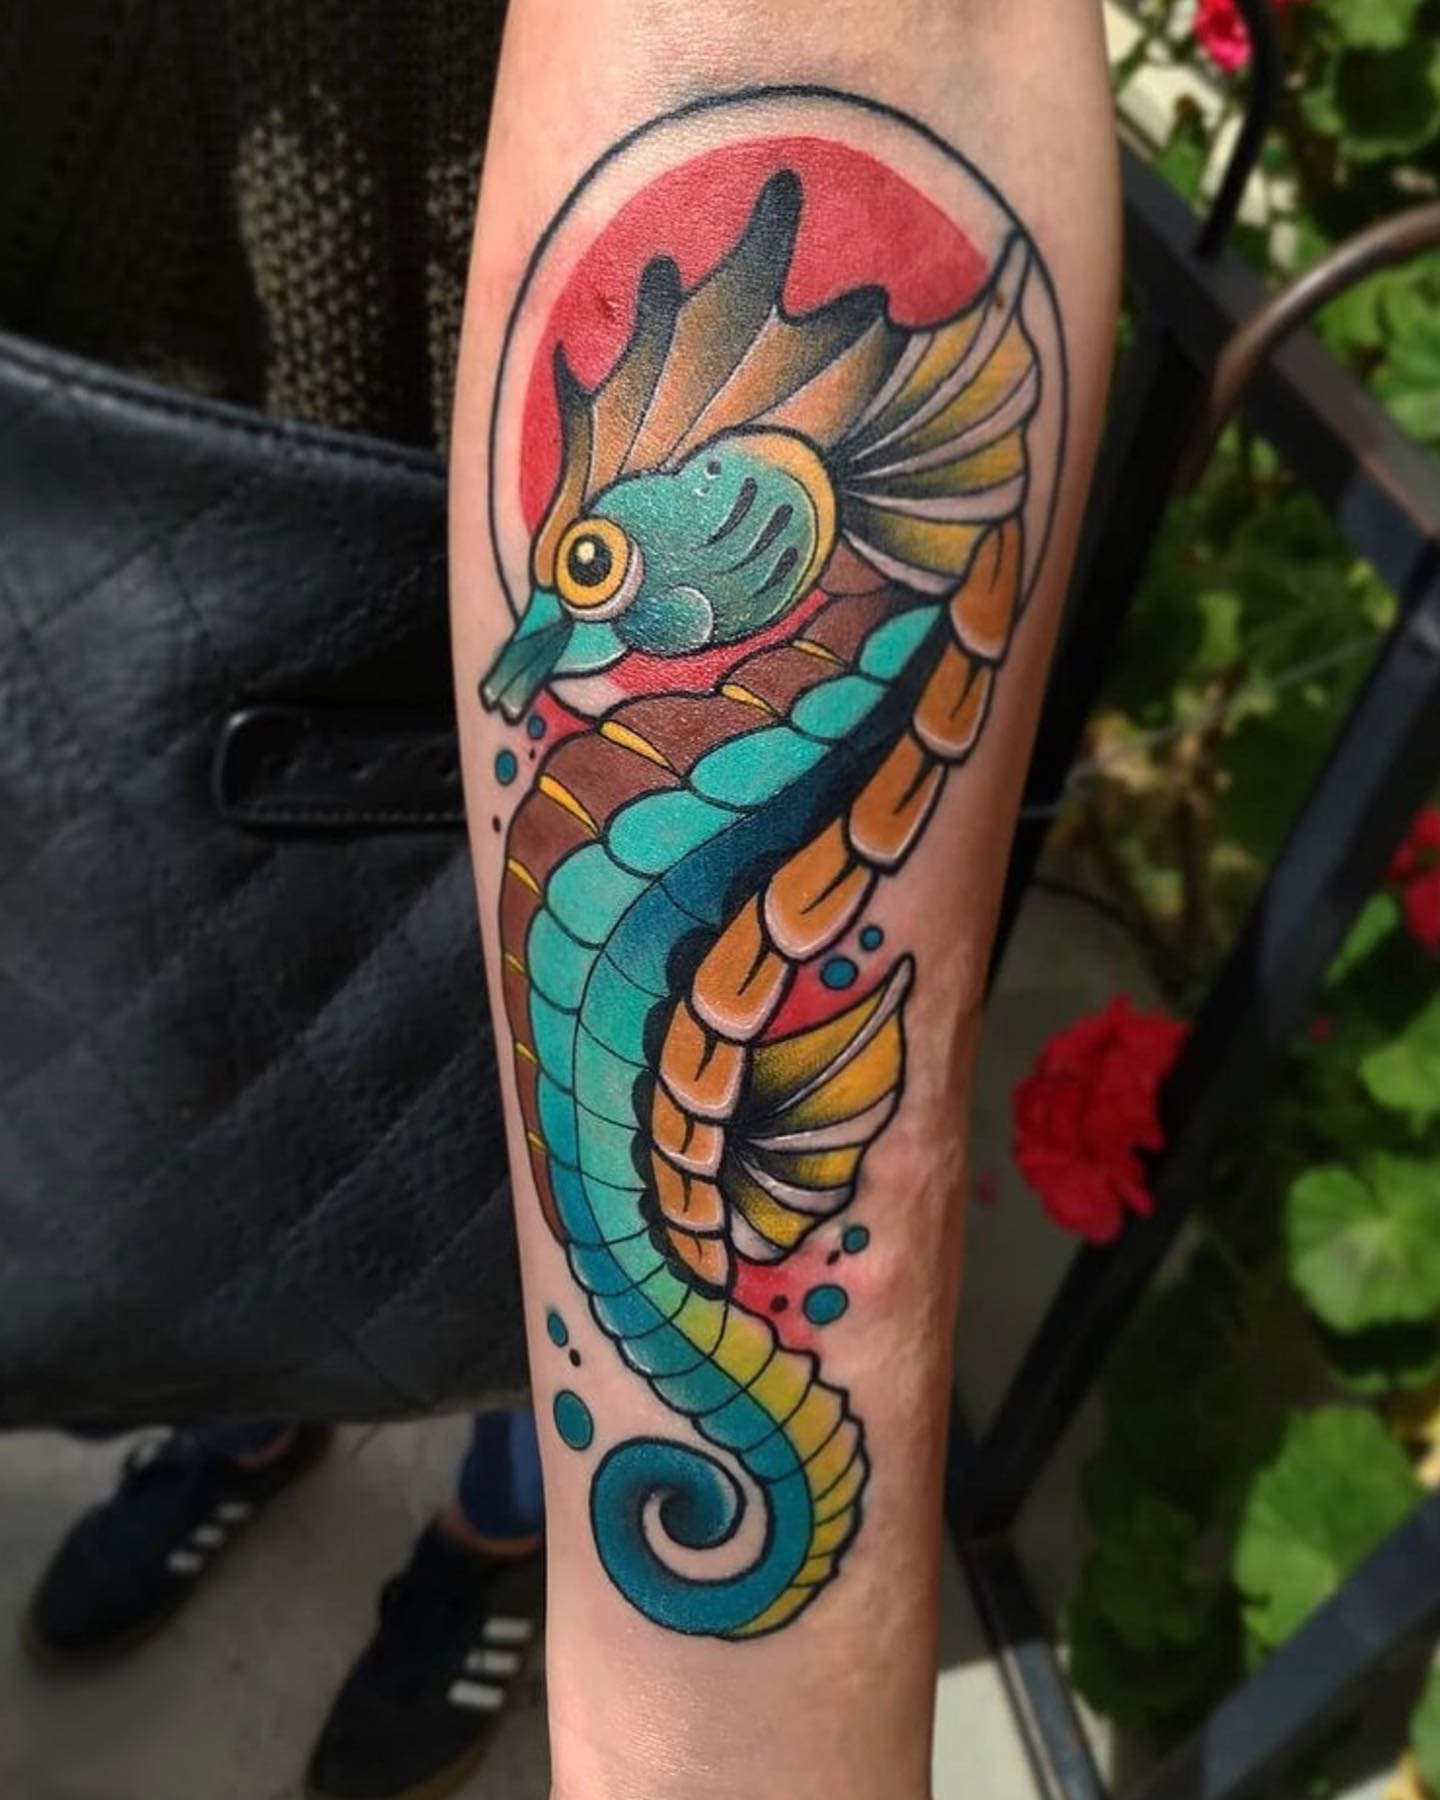 Seahorse tattoo ideas 3